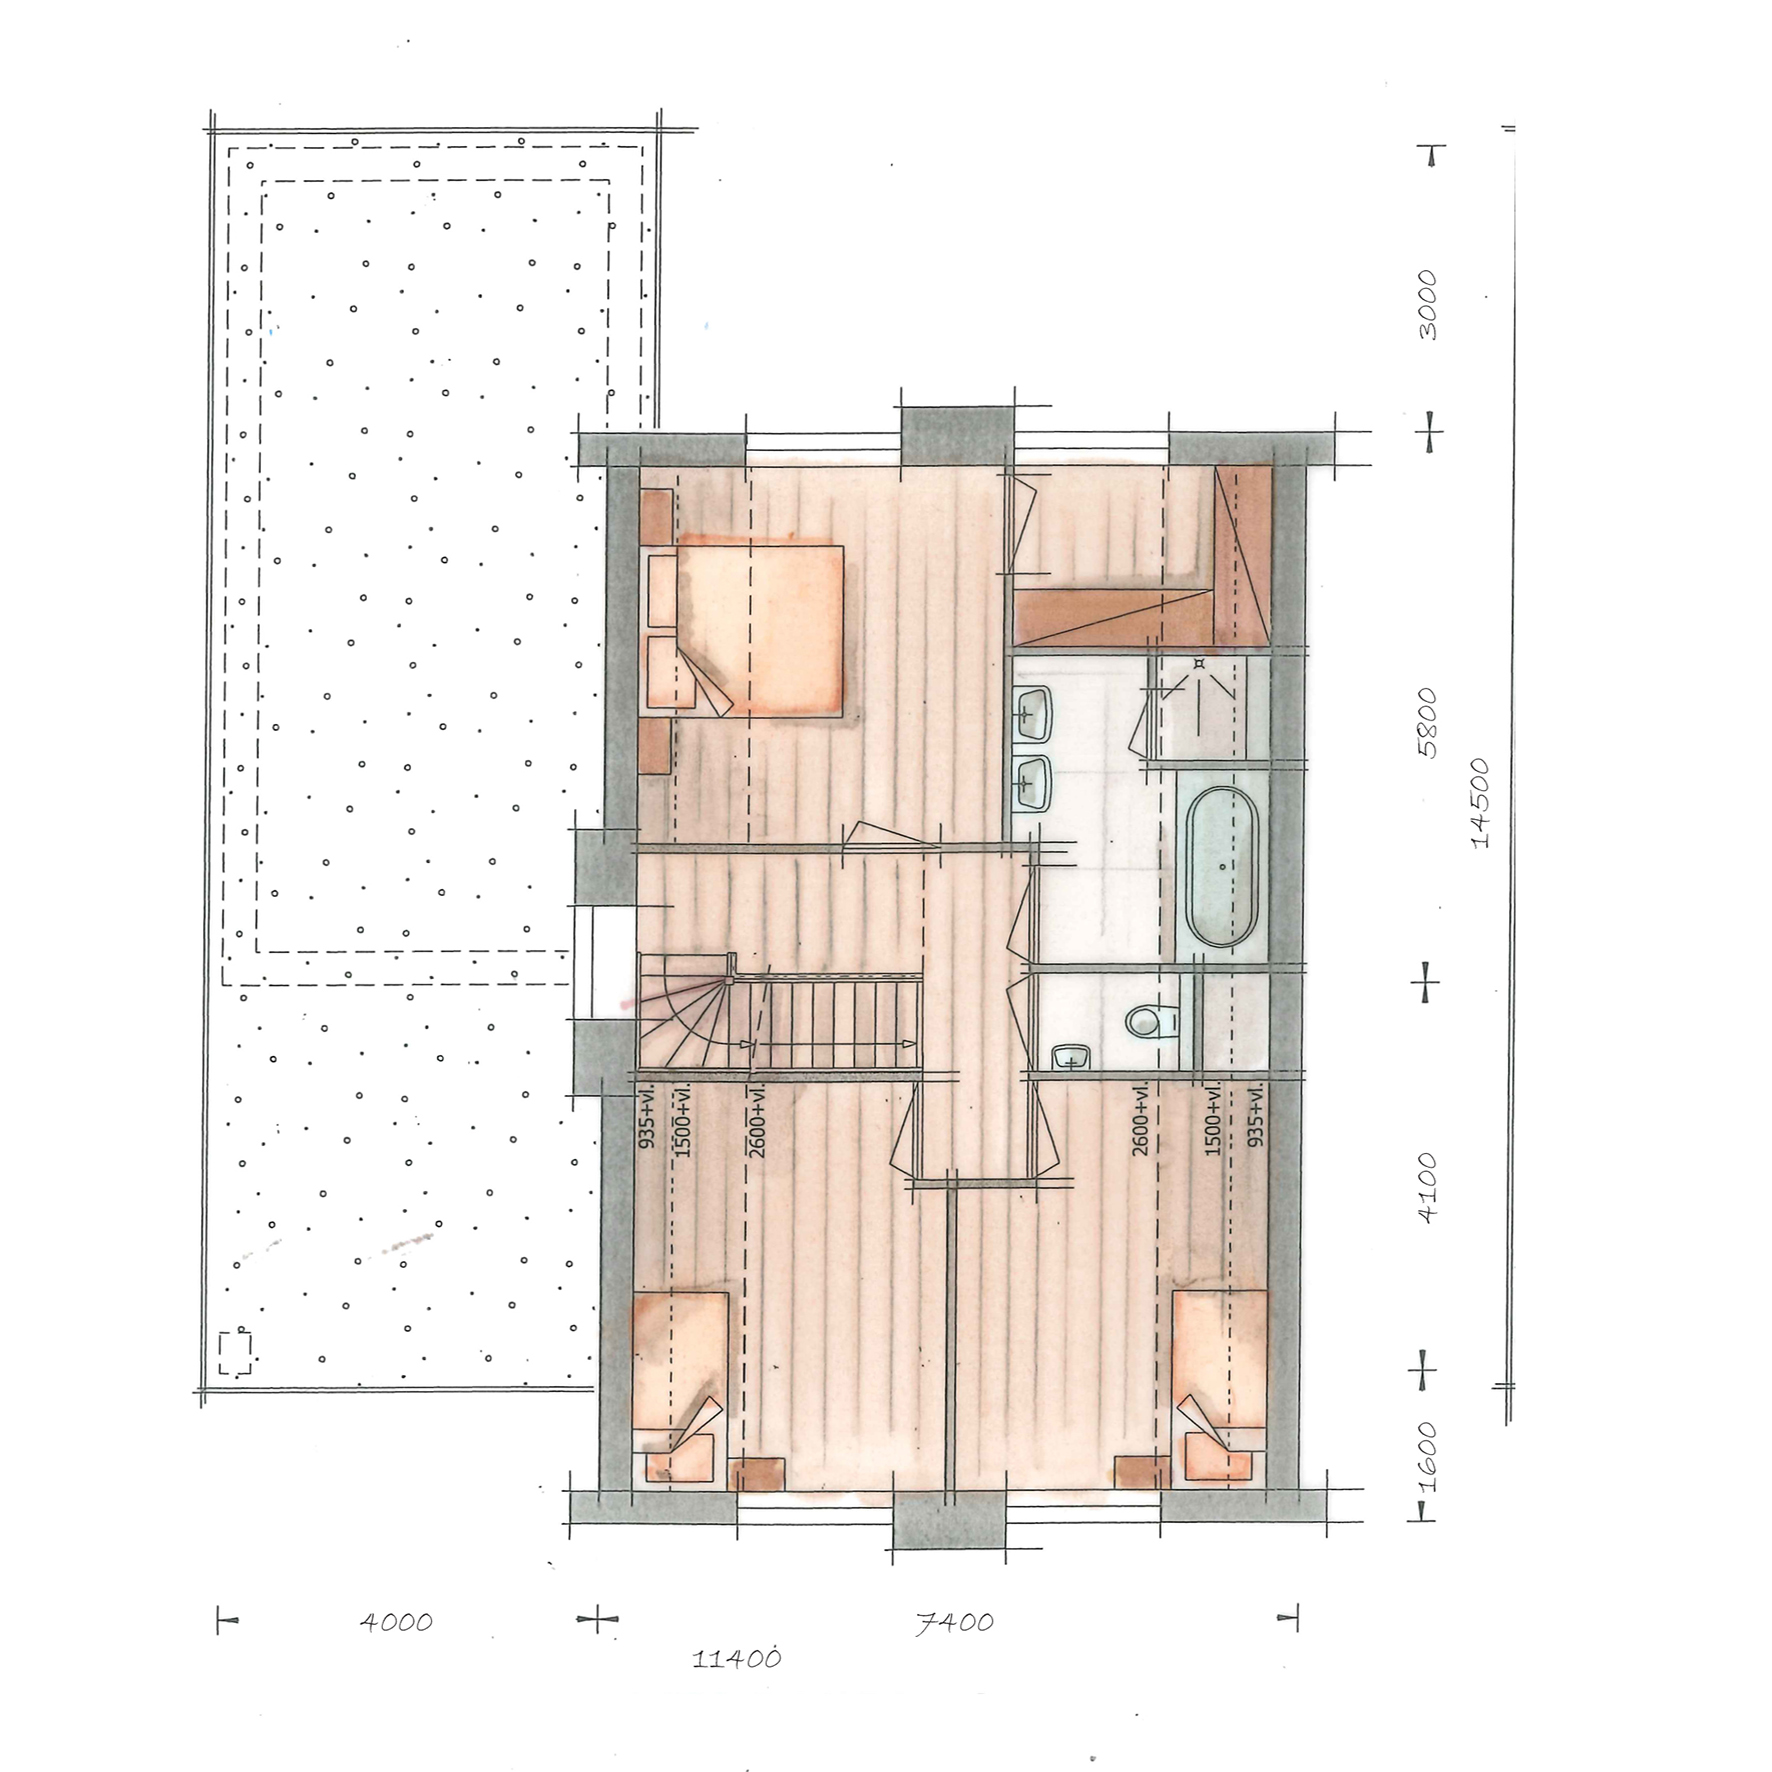 Foto: Huis bouwen  ndash  villatype Tandvlinder plattegrond verdieping   Architectuurwonen